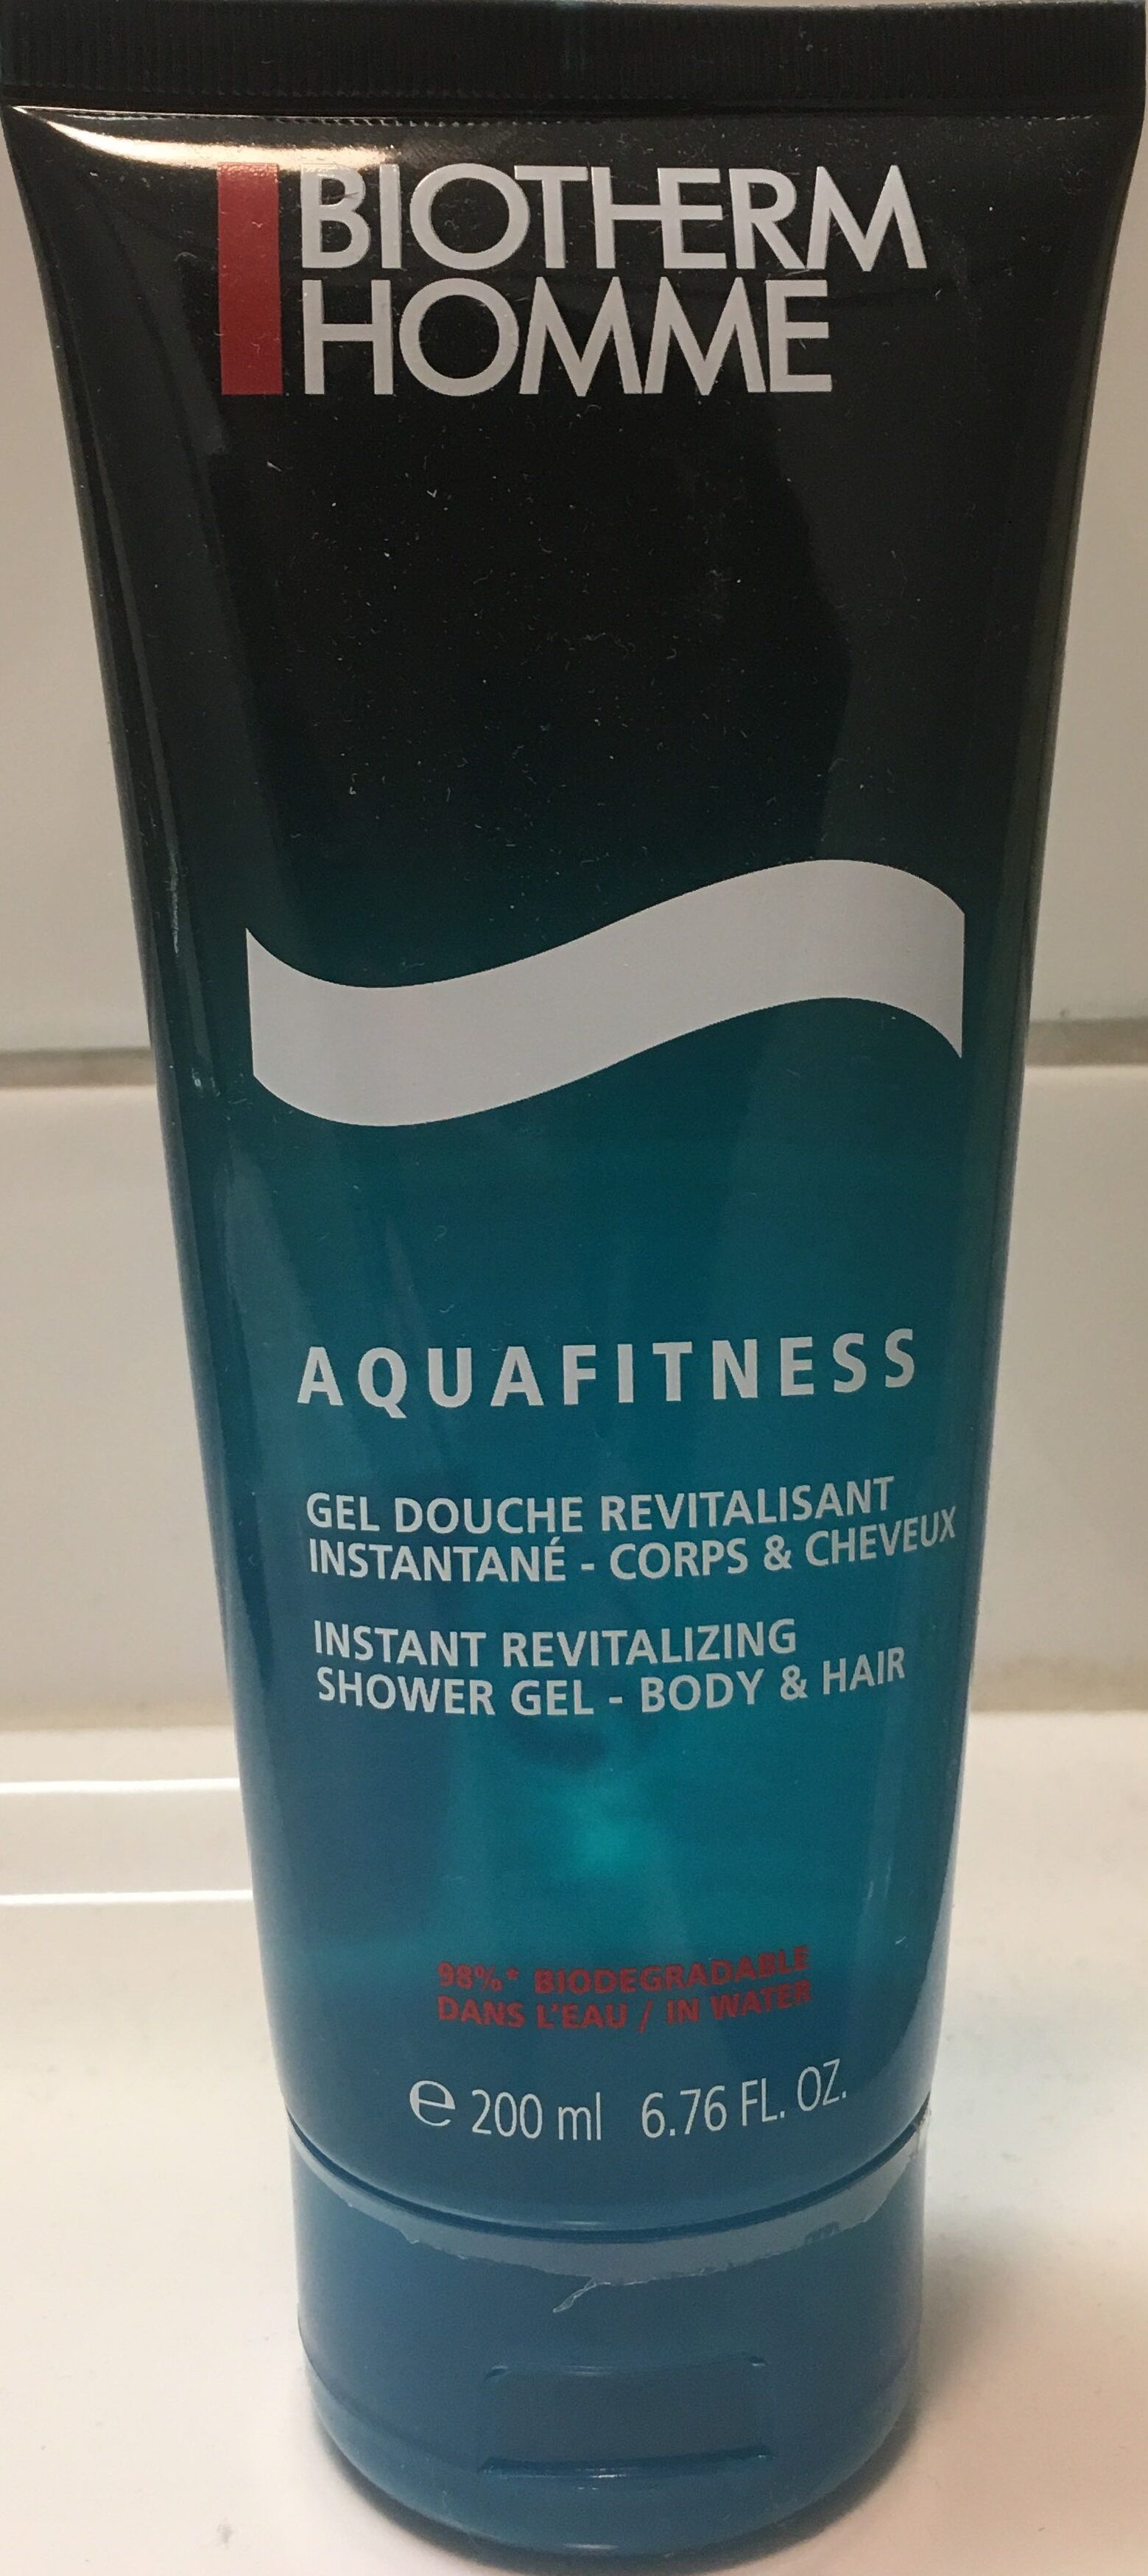 Aquafitness - Product - en